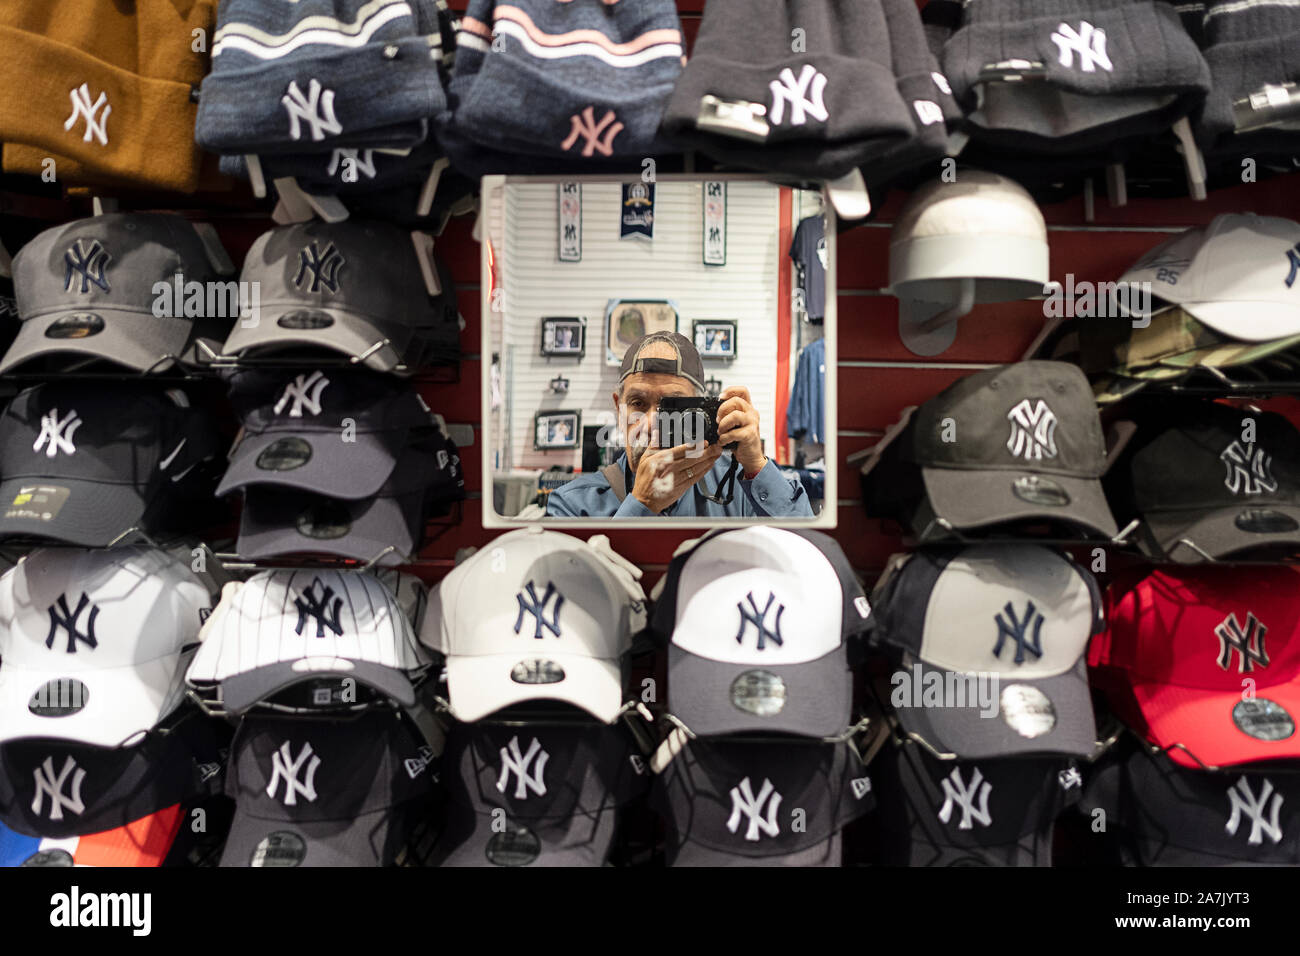 new york yankees team shop